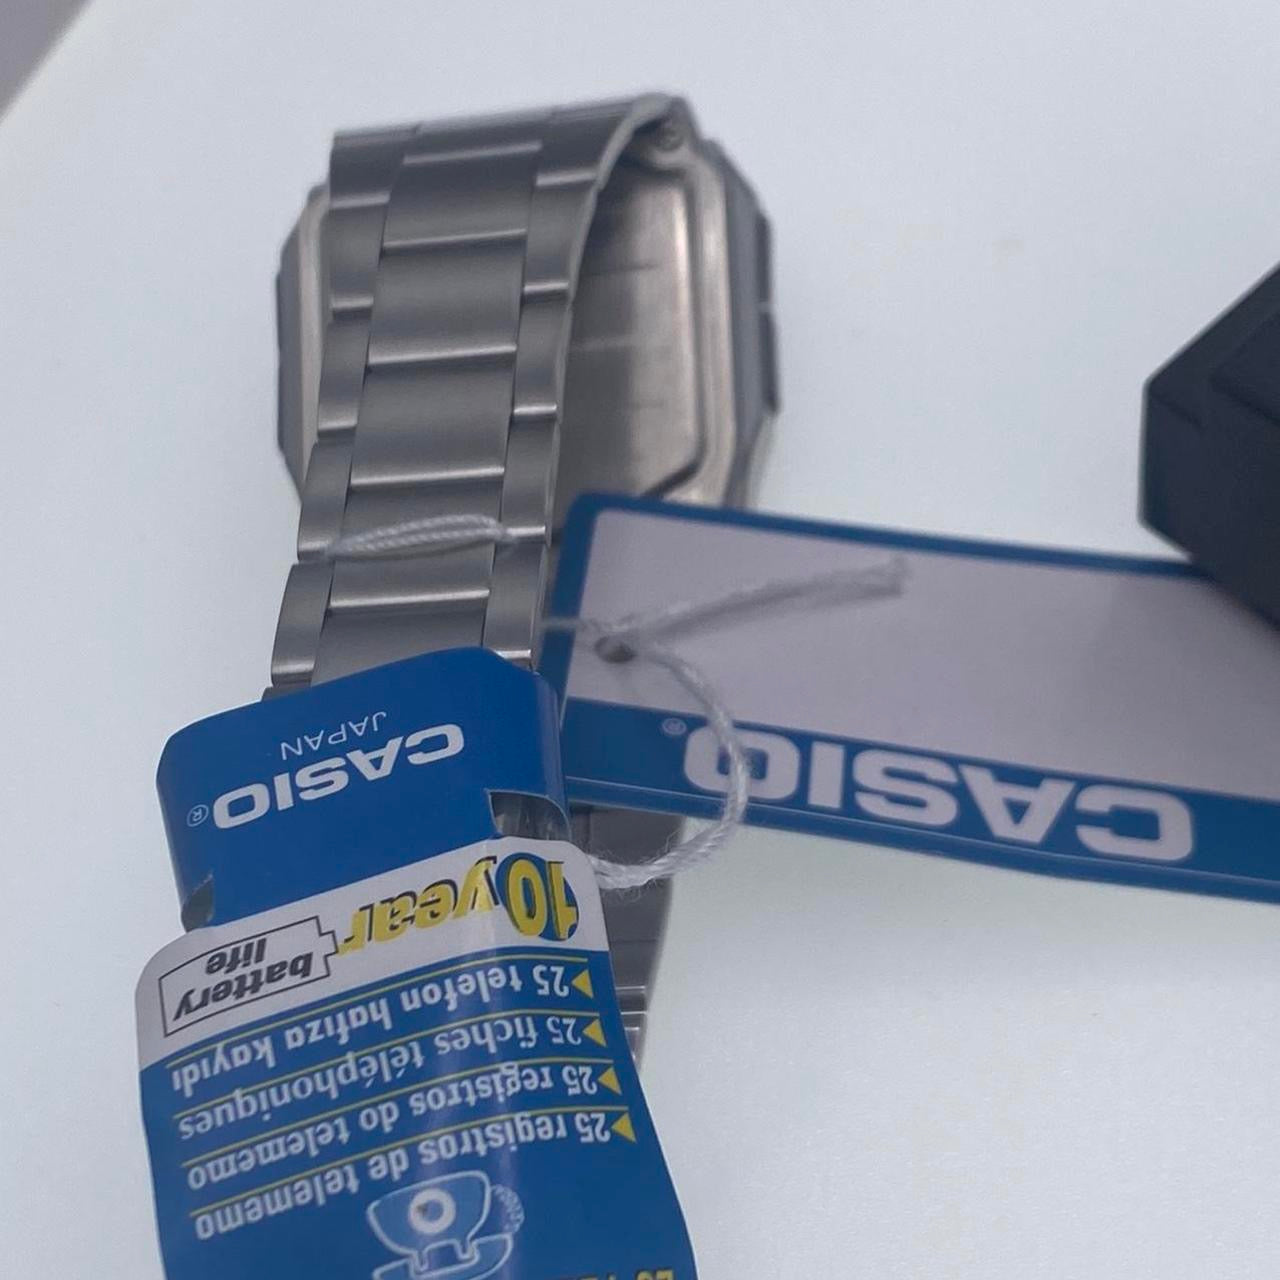 Casio Calculator Watch , Unisex Size 34 mm Diameter , Lightweight in Your Wrist , 8 inches Wrist Round Long